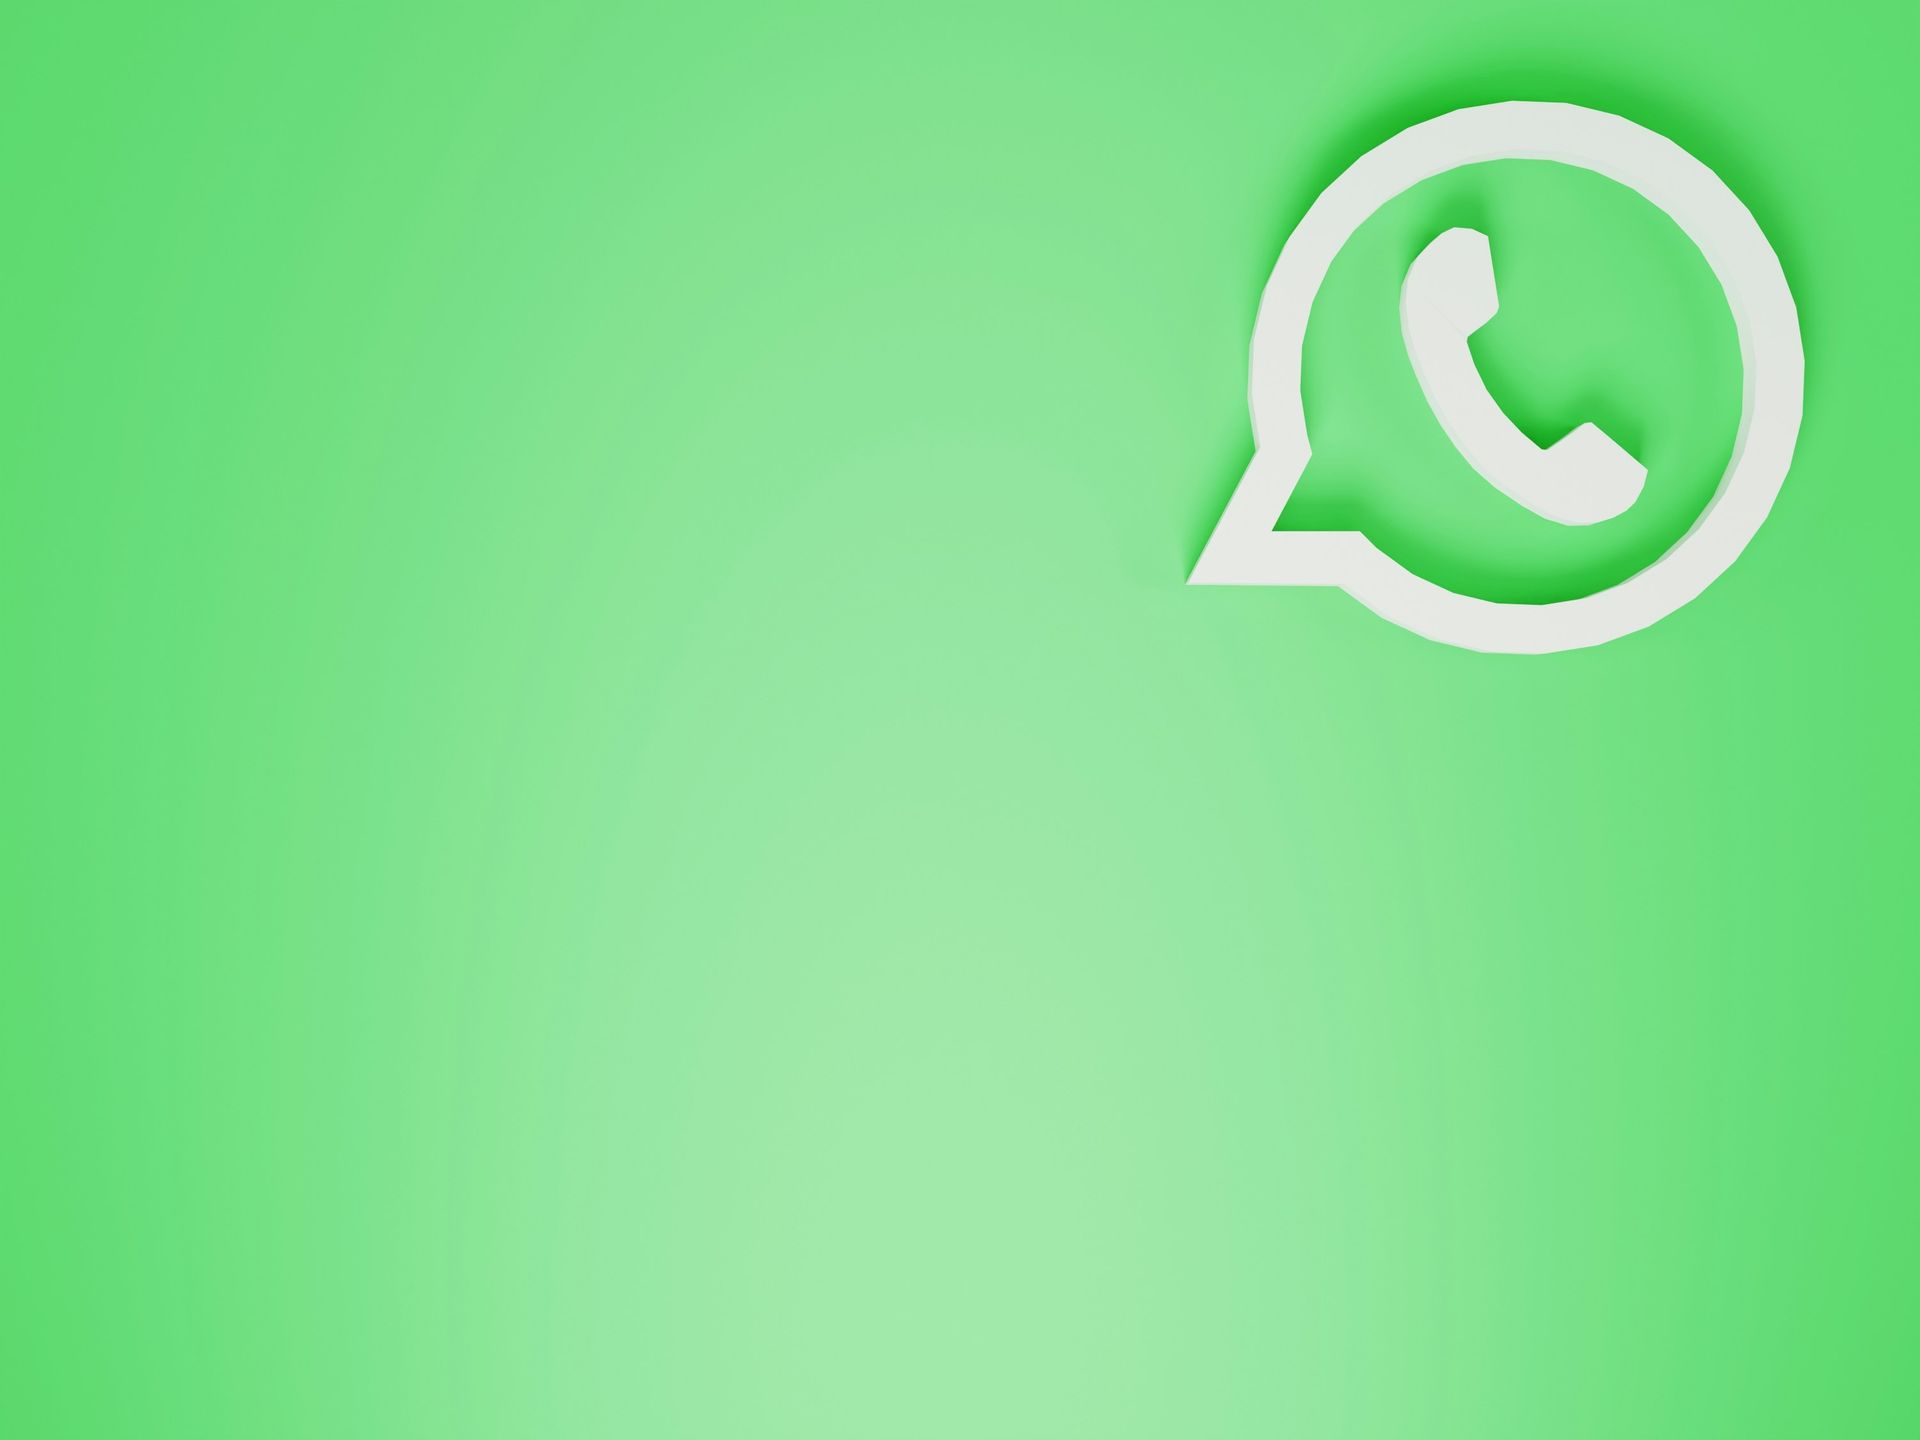 Les communautés WhatsApp disposent d'une nouvelle fonctionnalité de planification d'événements